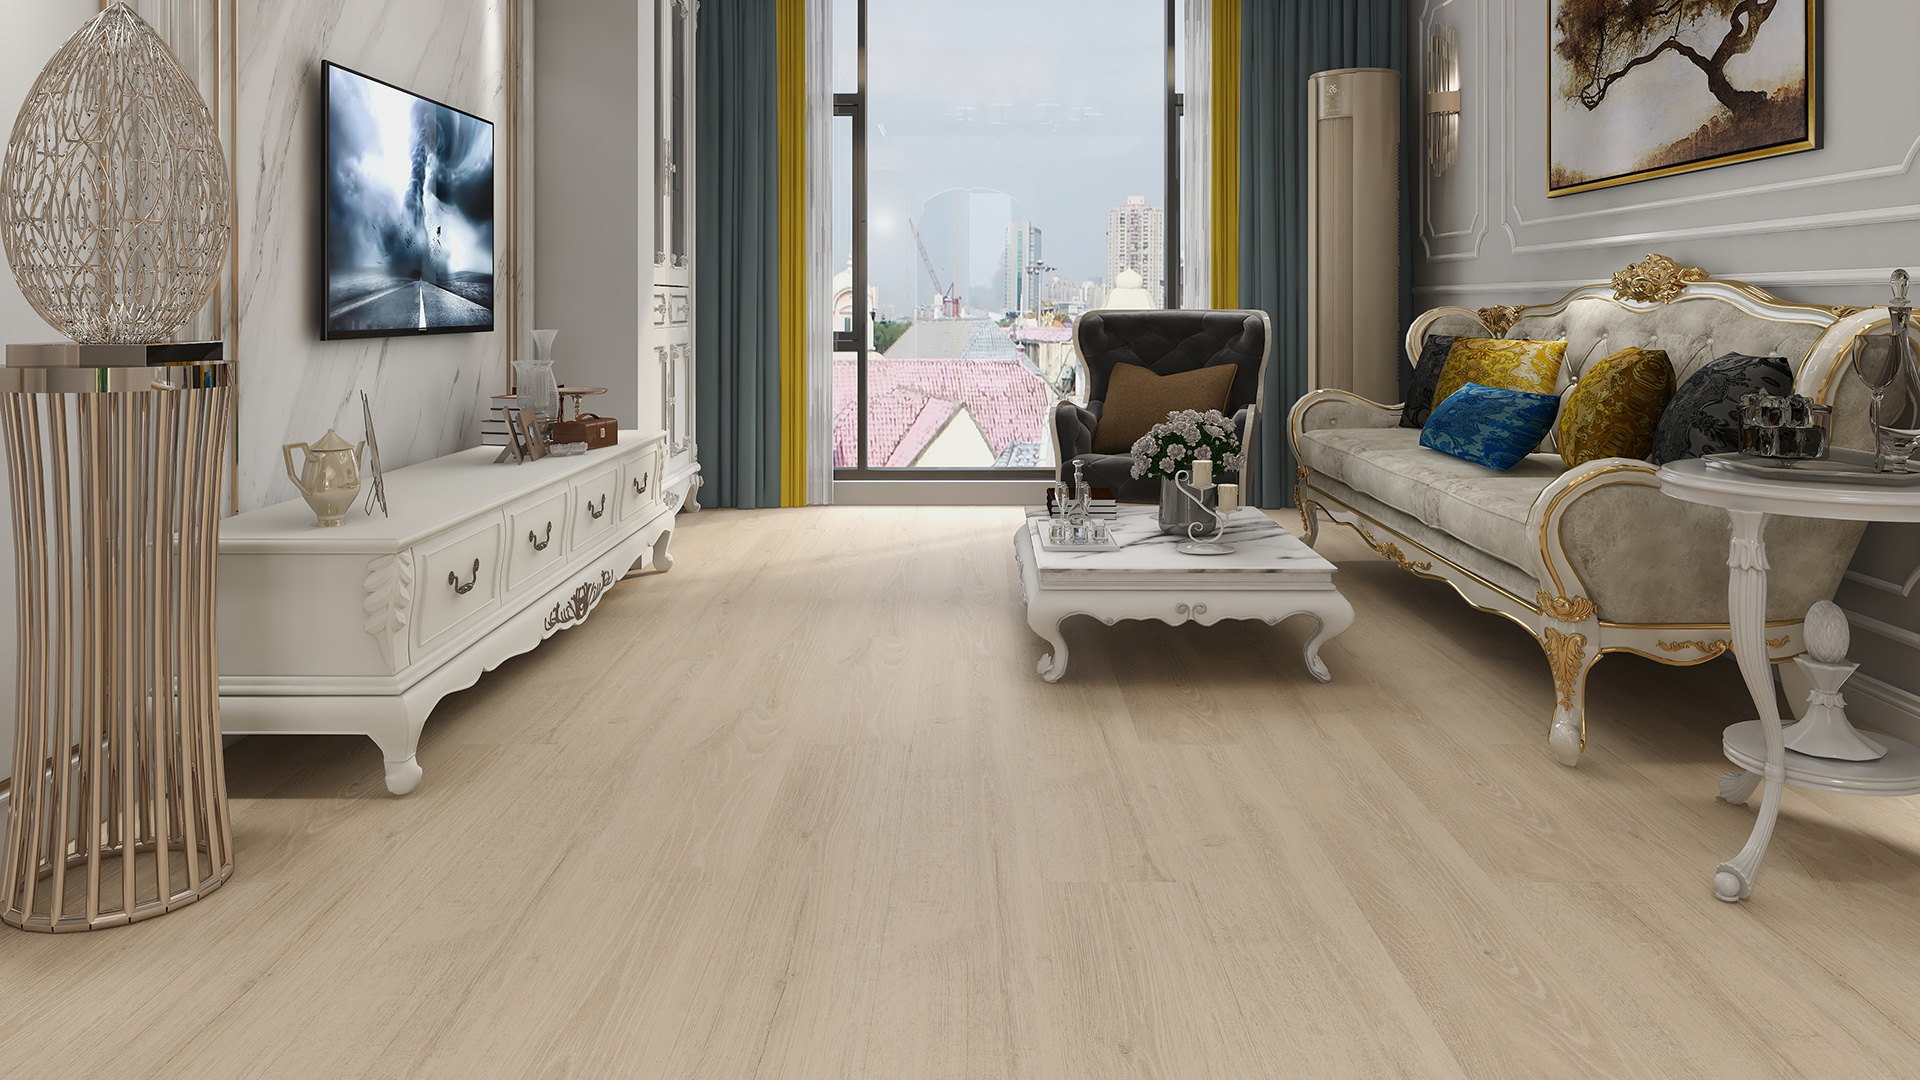 比利时quick-step艺术木地板,至尊系列 mj3545,进口地板